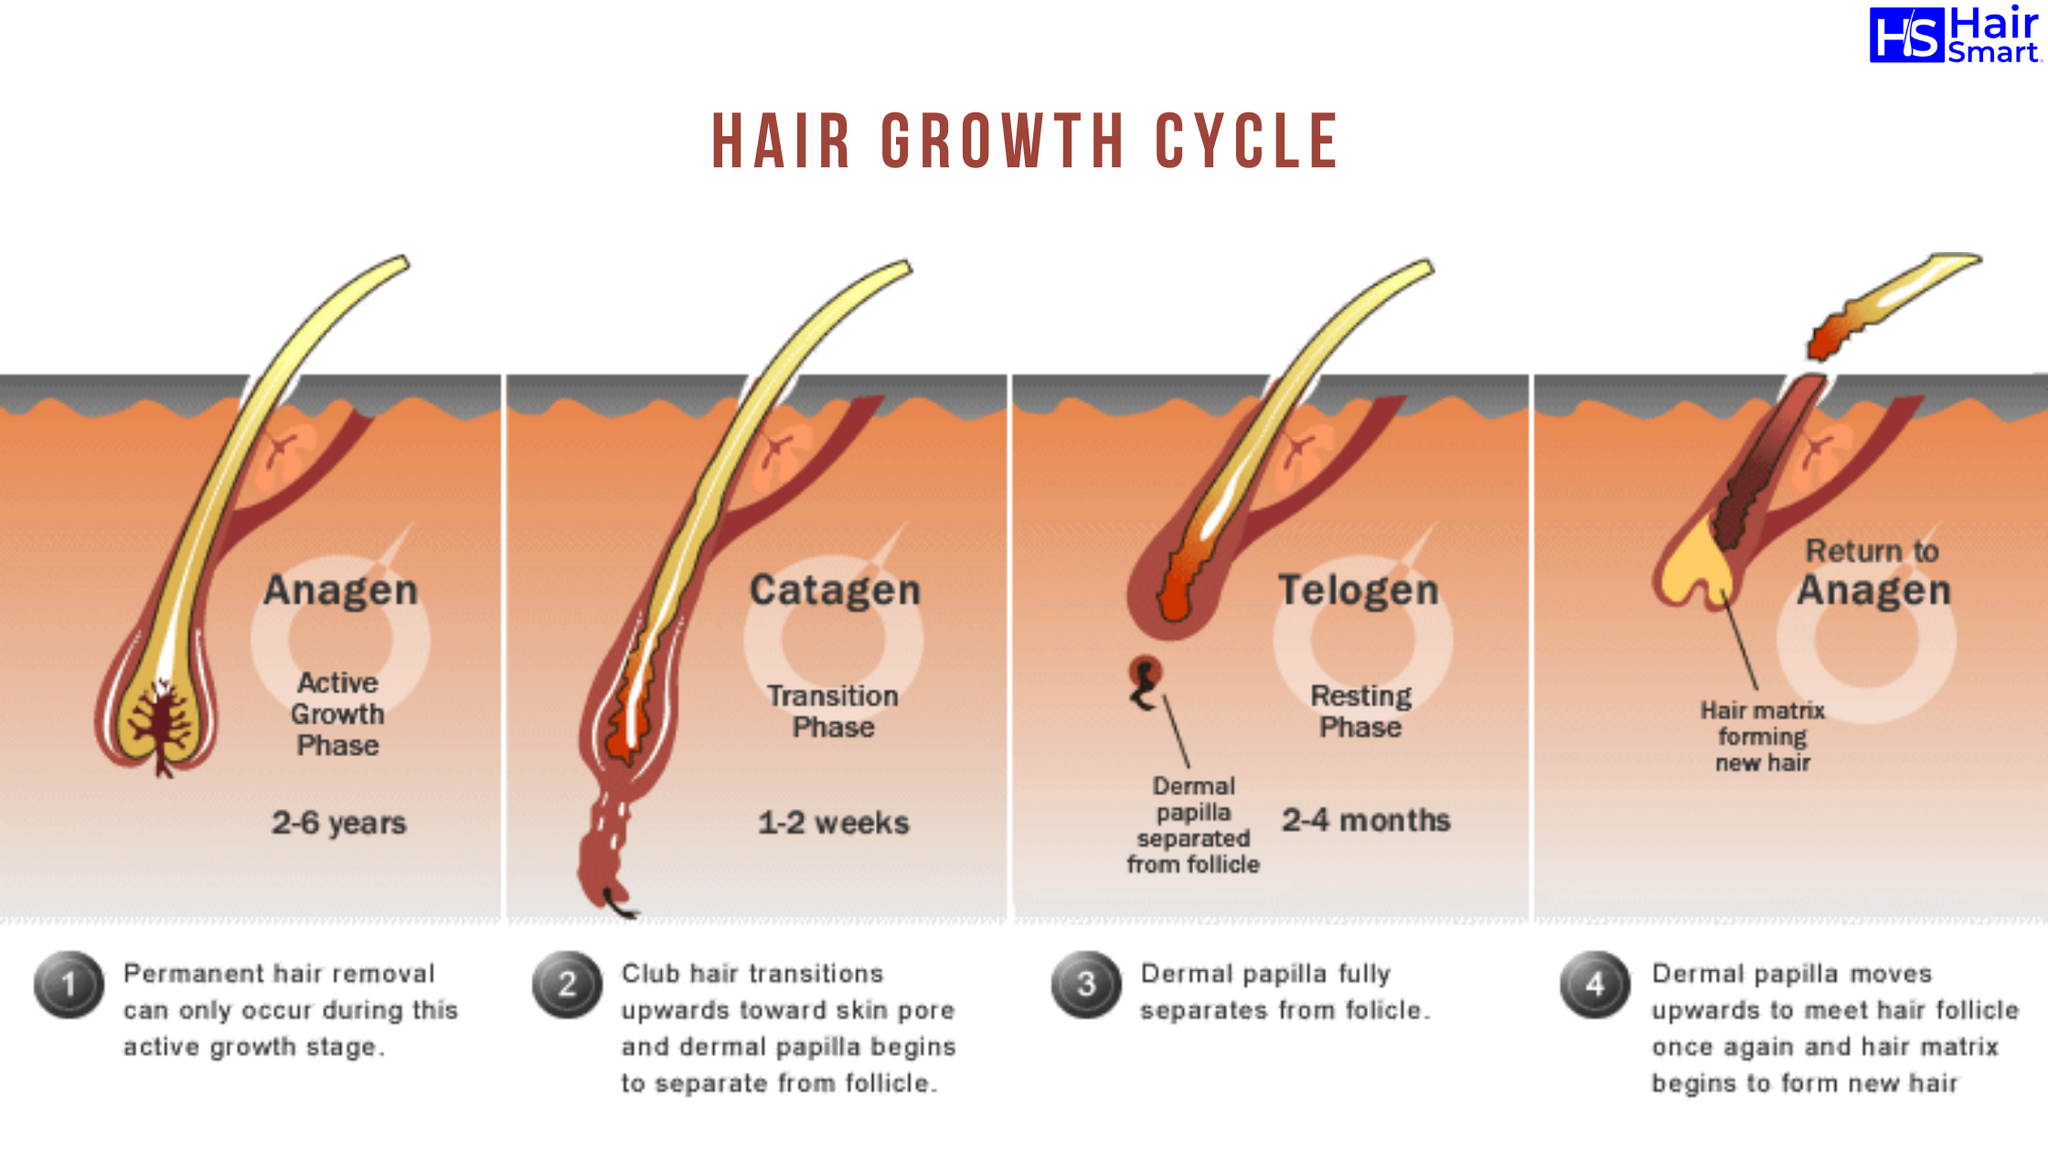 Как усилить рост волос